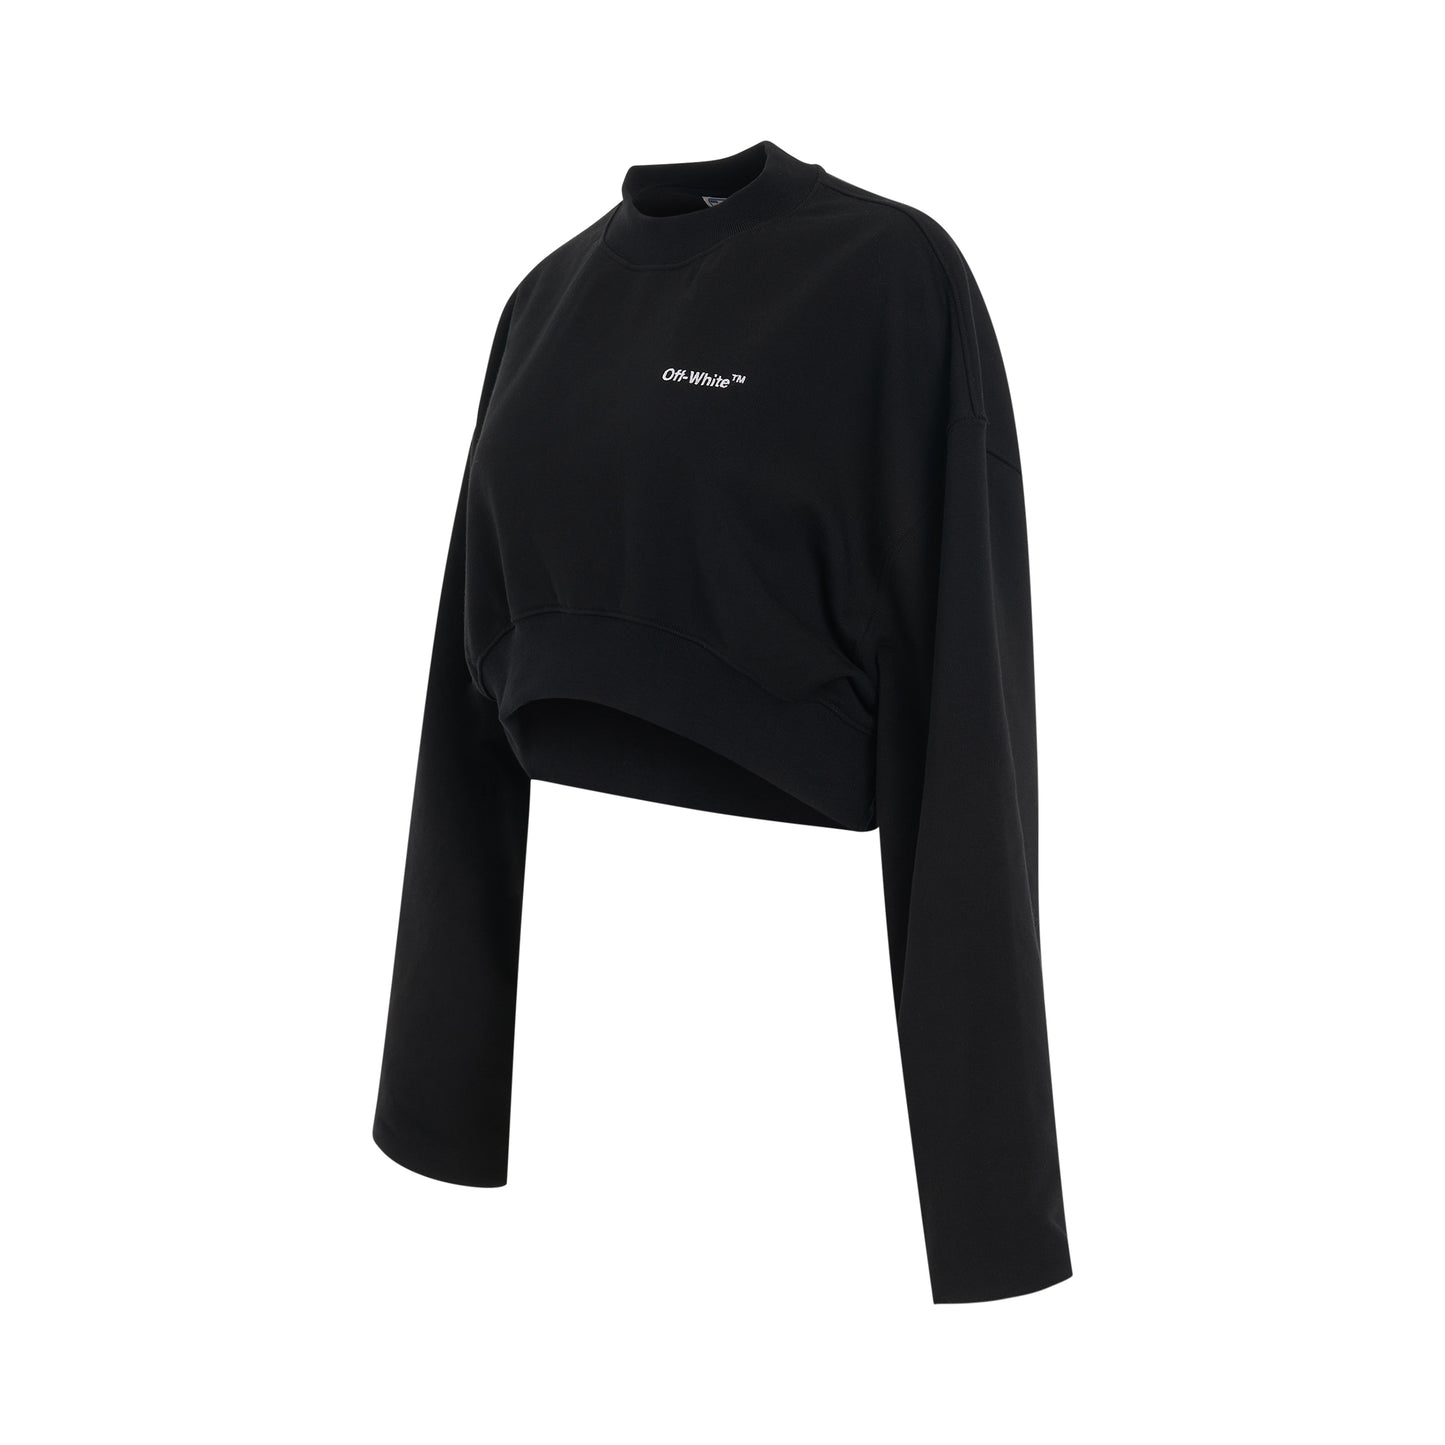 For All Helvetica Crop Oversize Crewneck Sweatshirt in Black/White